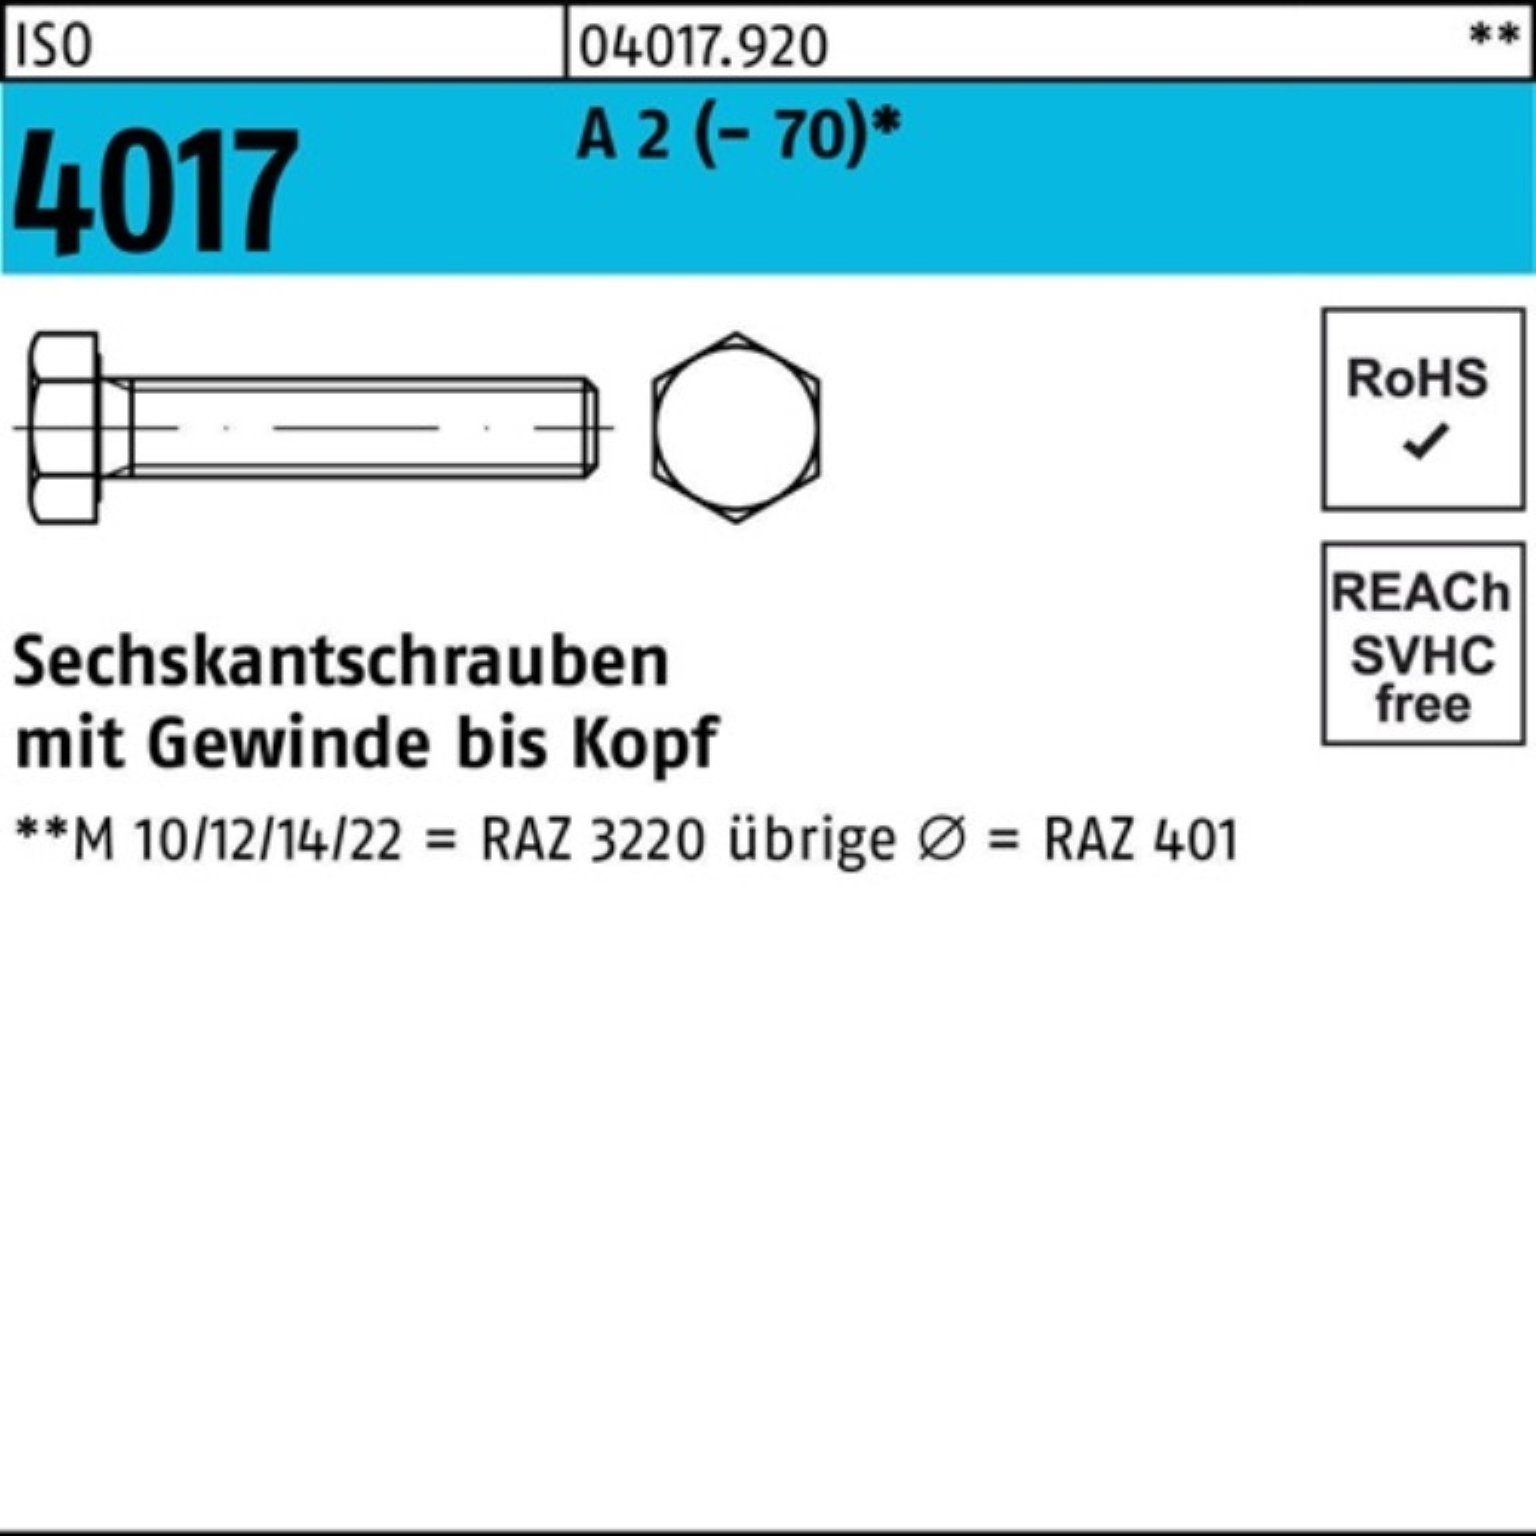 Bufab Sechskantschraube 100er Pack Sechskantschraube ISO 4017 VG M33x 130 A 2 (70) 1 Stück